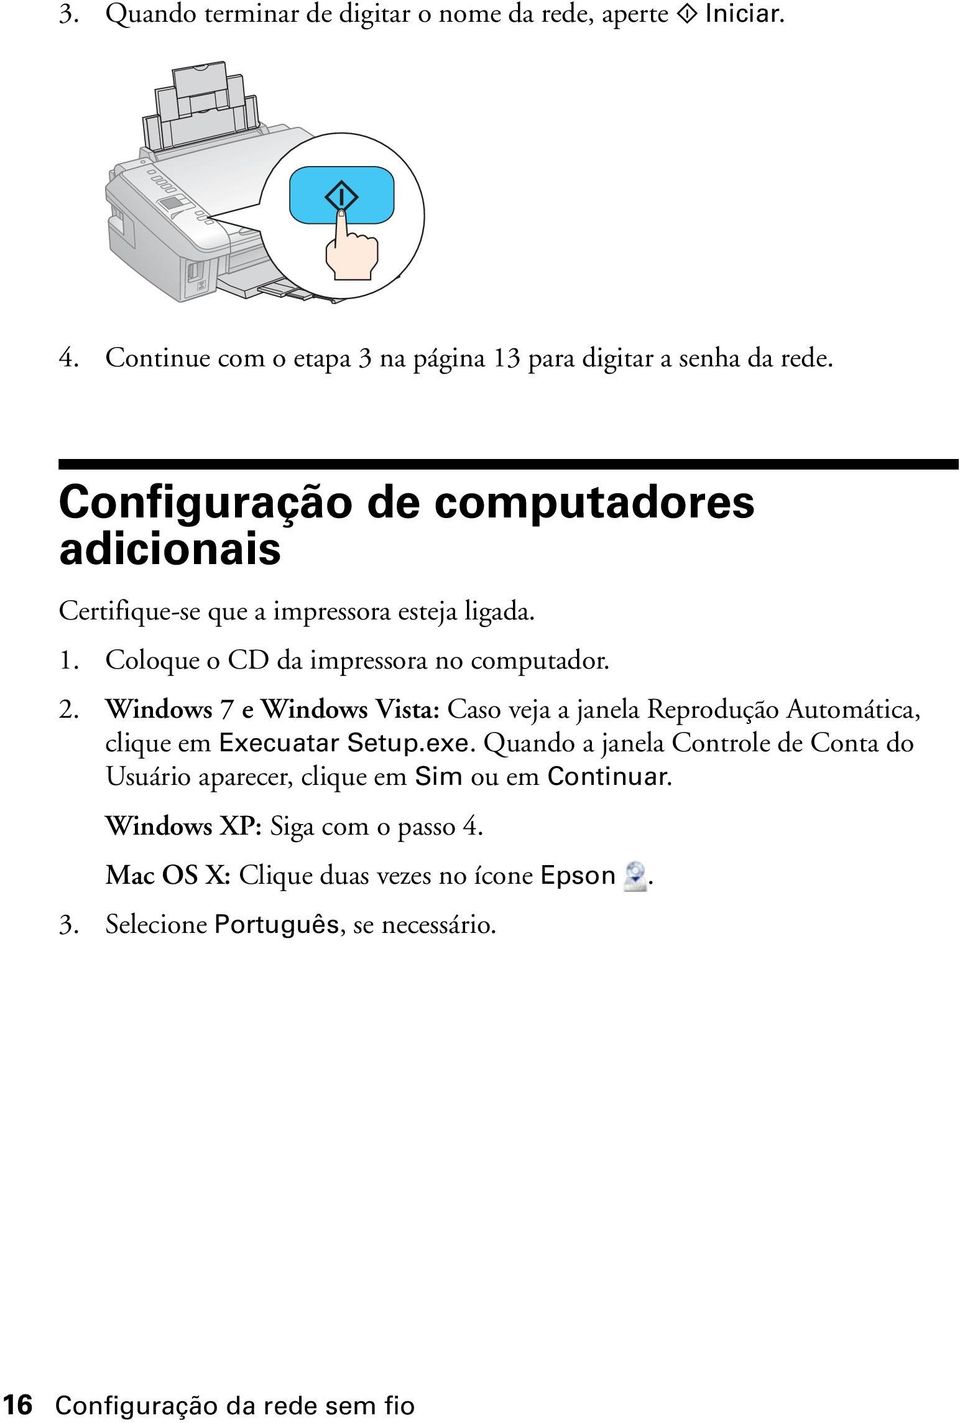 Windows 7 e Windows Vista: Caso veja a janela Reprodução Automática, clique em Execuatar Setup.exe.